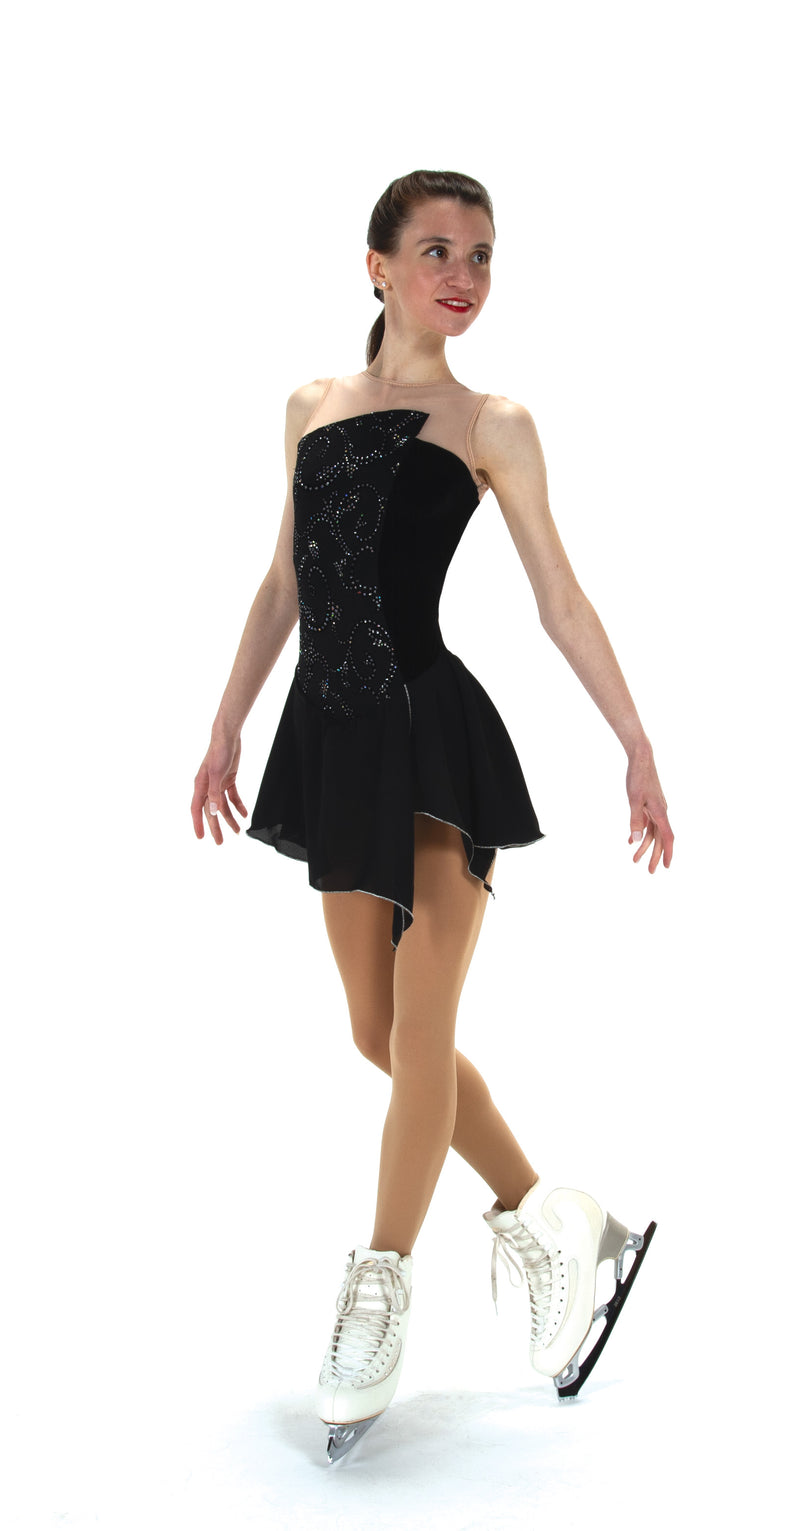 JR521 On the Edge Dance Figure Skate Dress